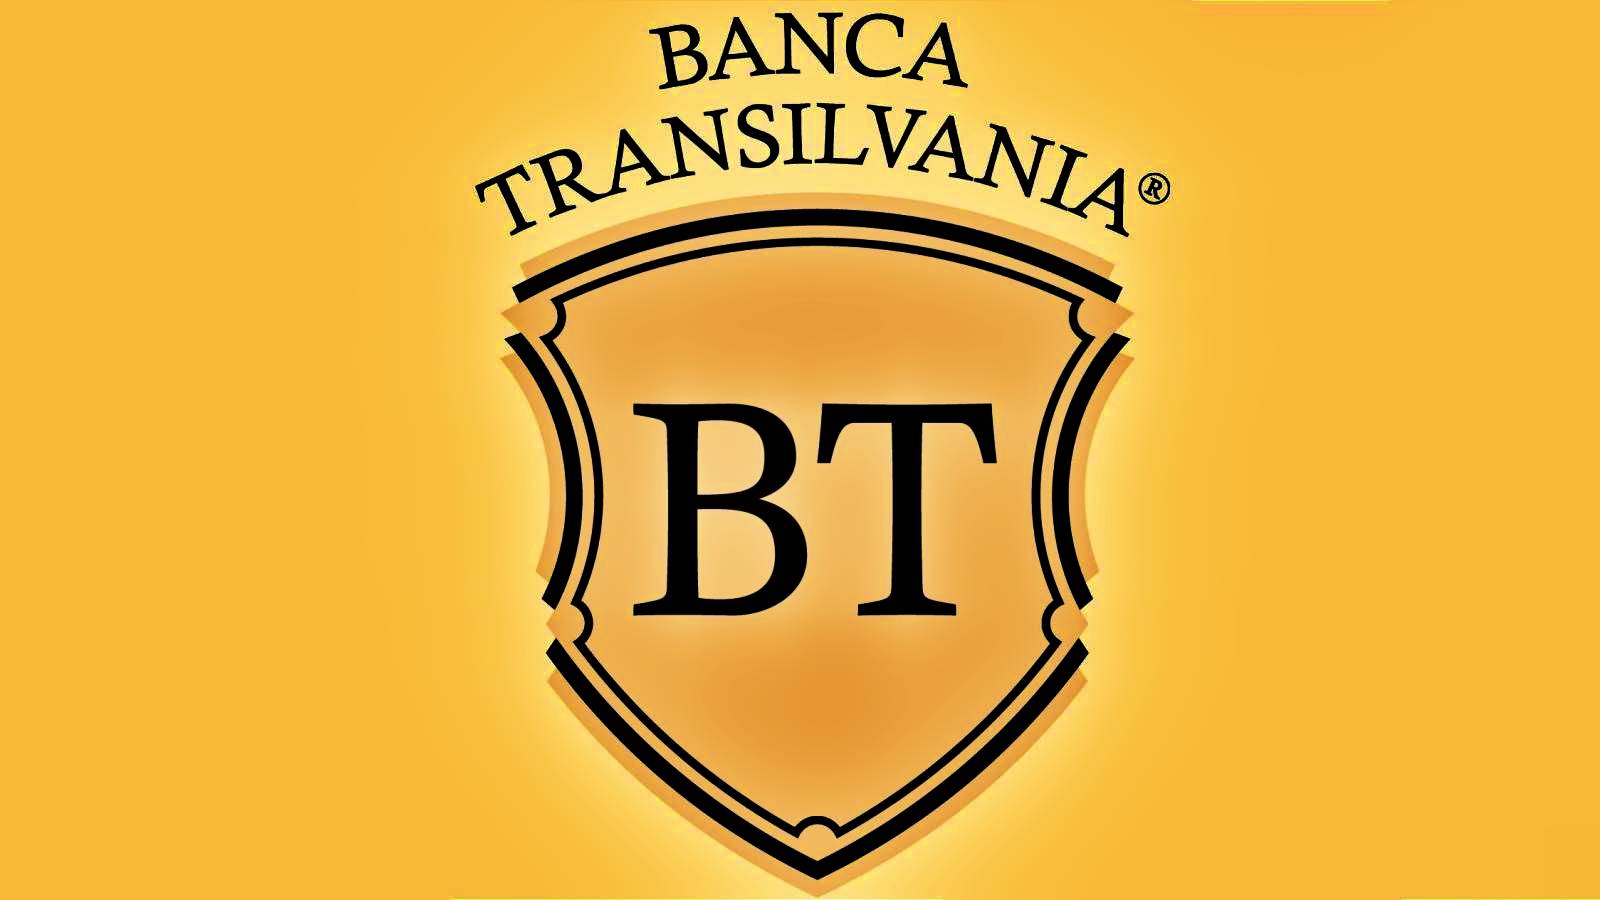 BANCA Transilvania Kunder i Rumænien skal være FORSIGTIG